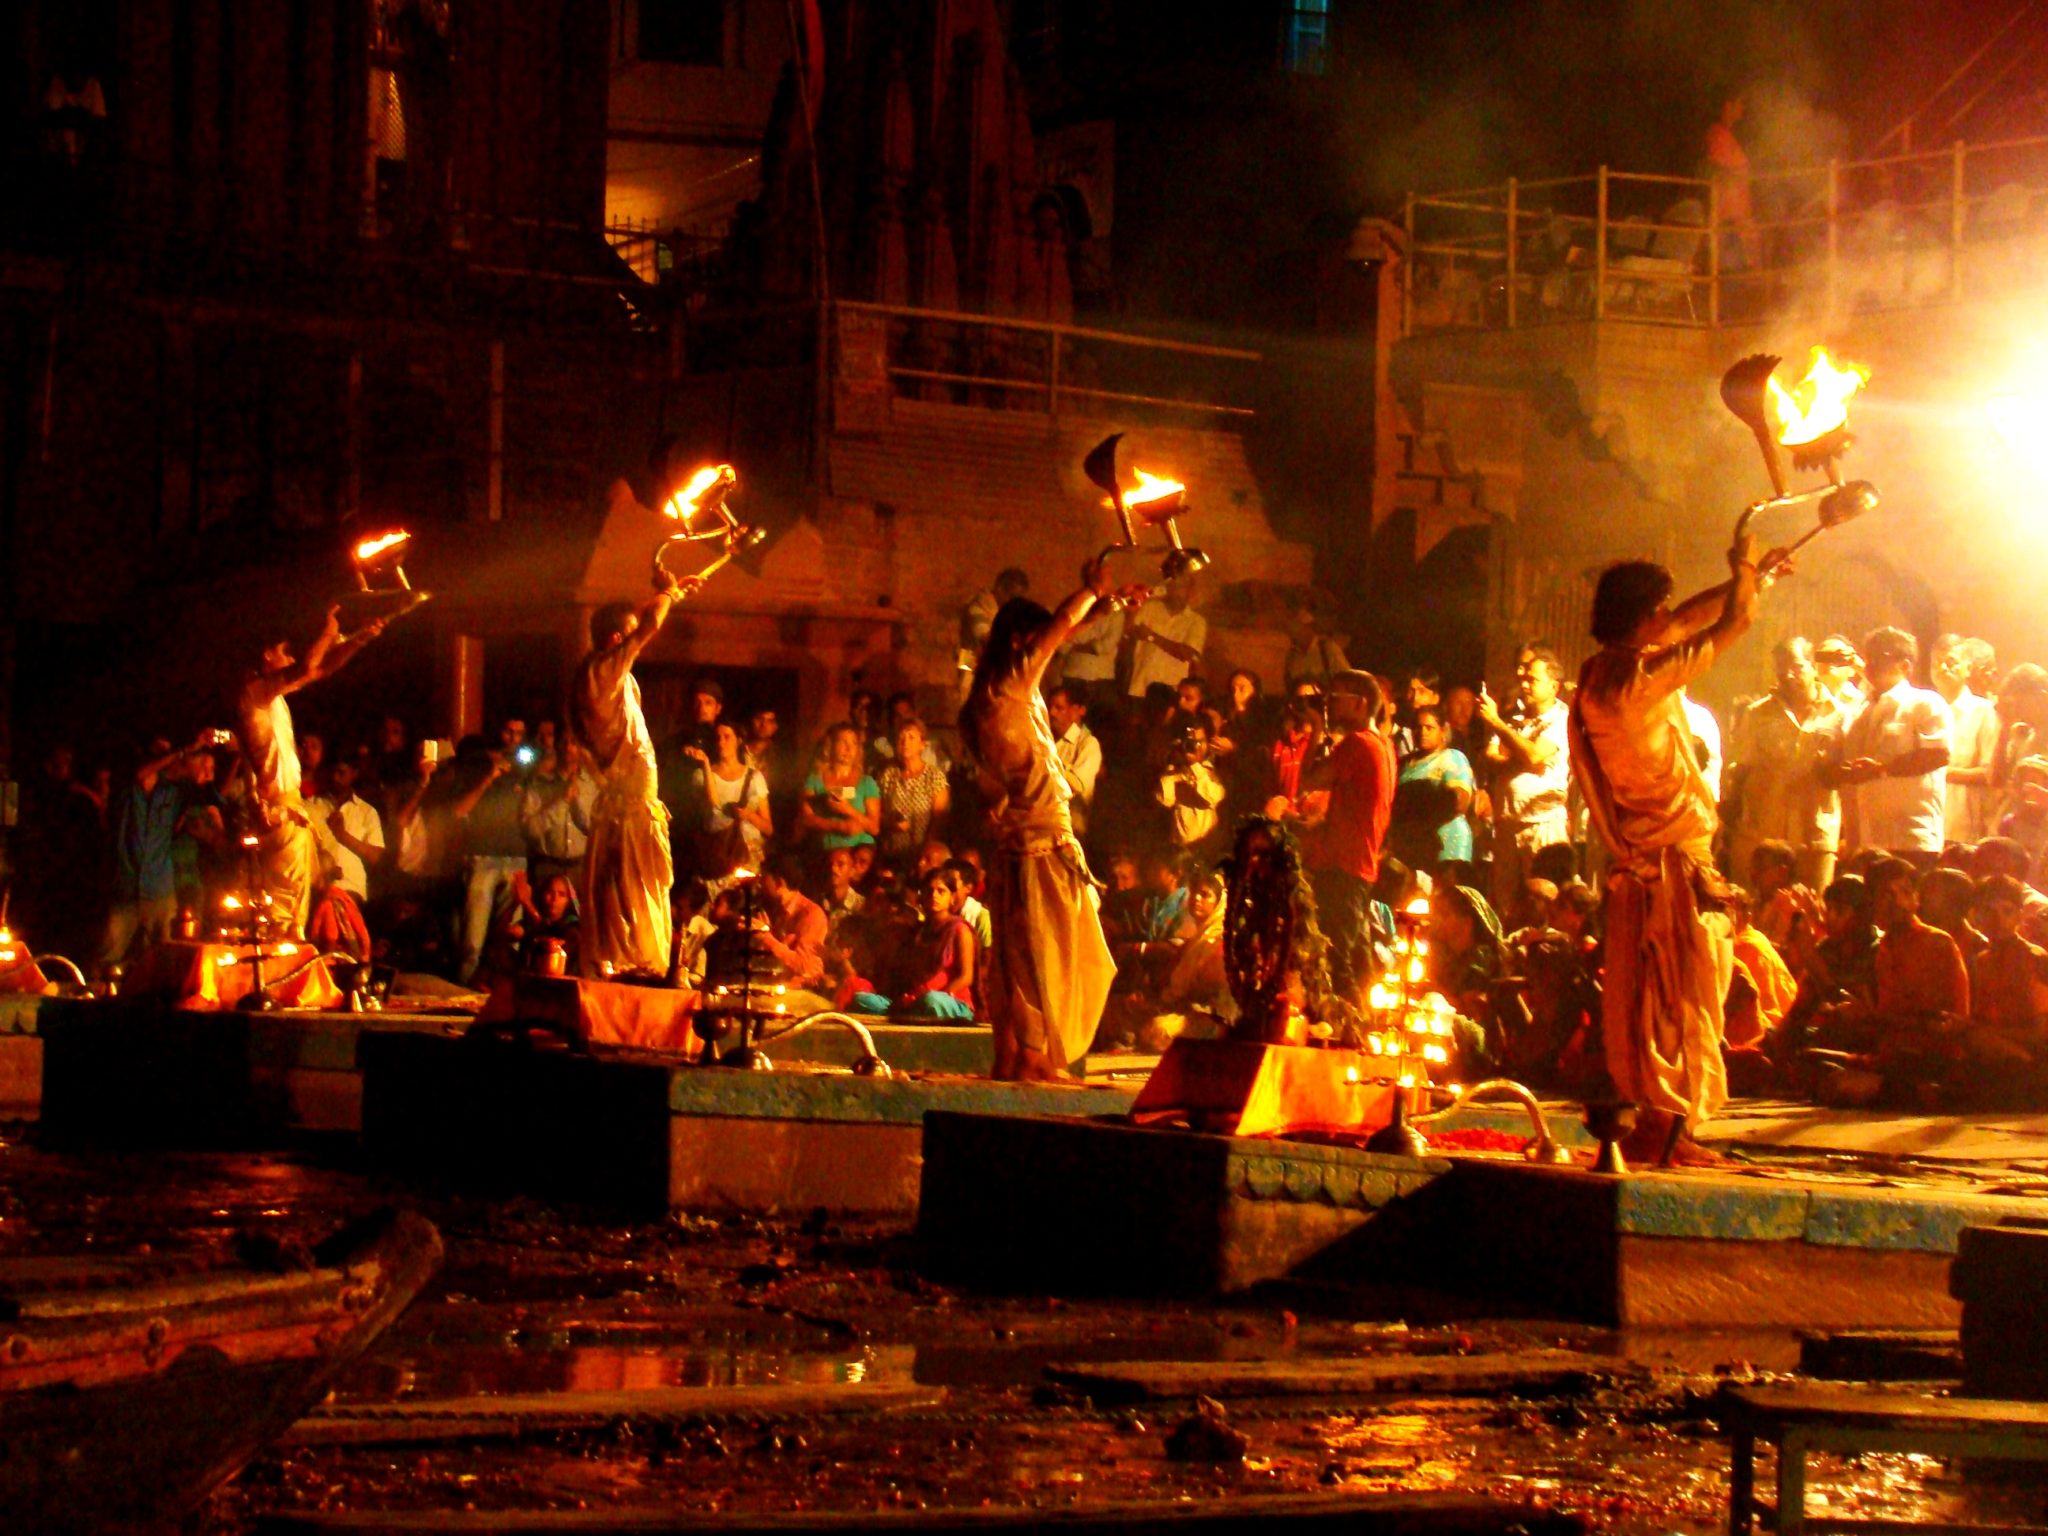 Varanasi, Kashi or Benaras | City of Ghats, Culture & Heritage